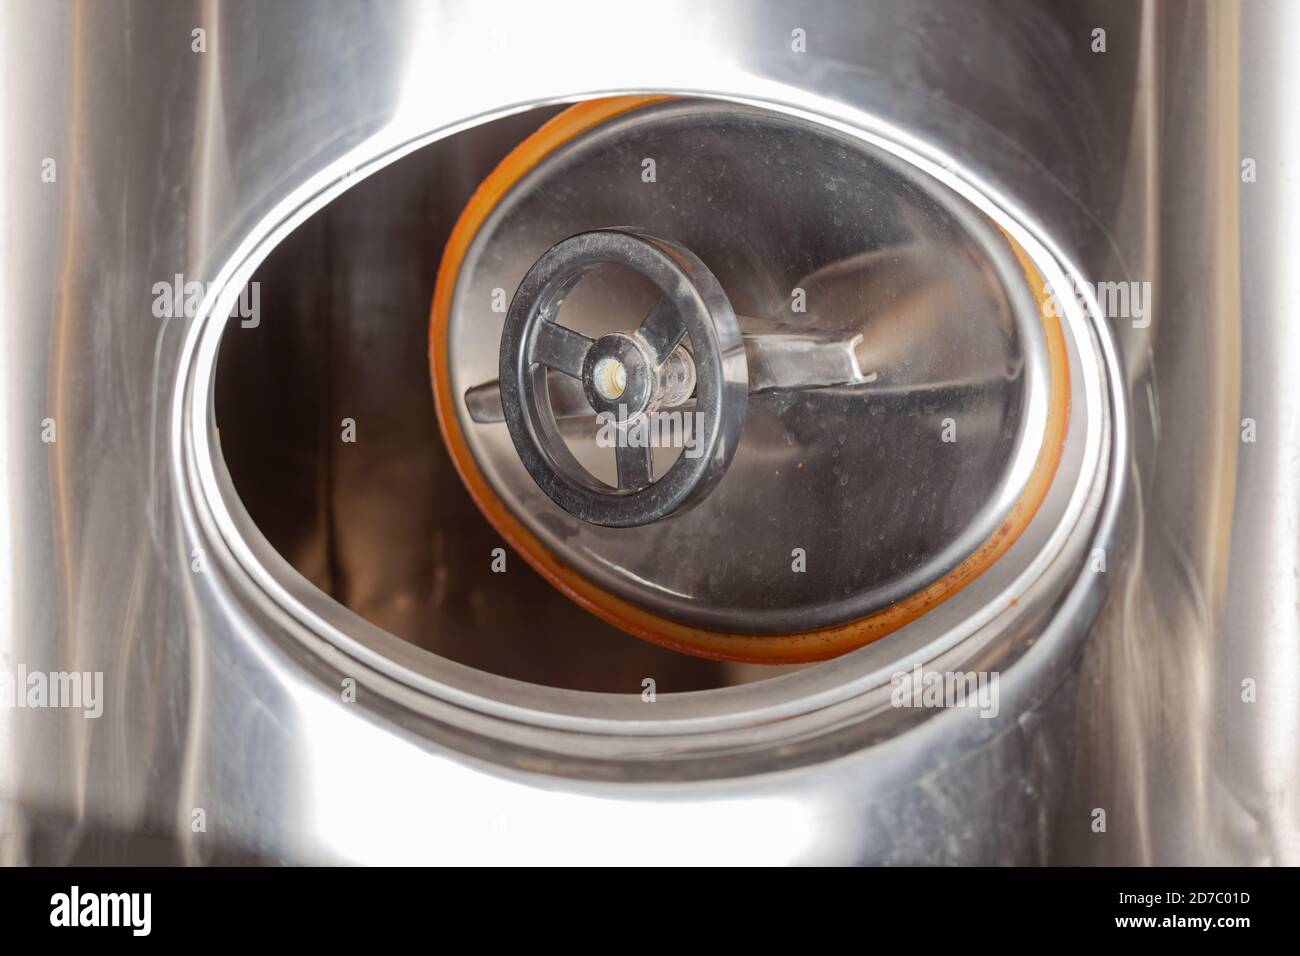 Birreria, portello aperto in un serbatoio di birra, serbatoio di fermentazione a cono cilindrico Foto Stock